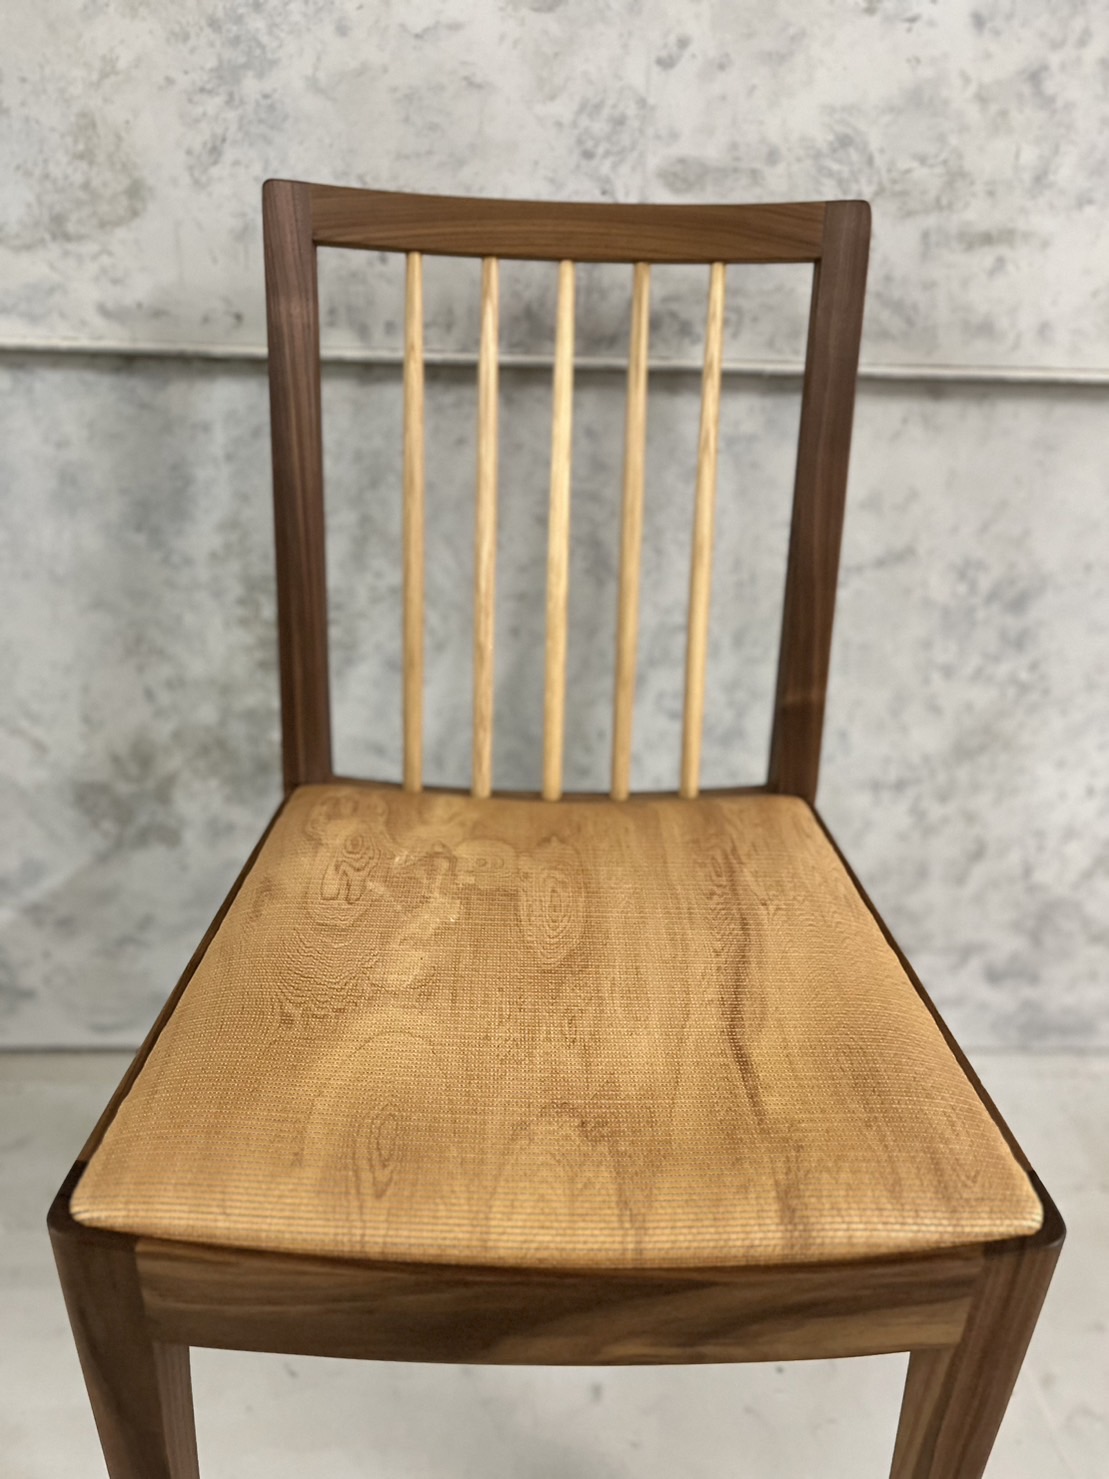 木織テナージュサンプル製品「木織椅子(屋久杉)」